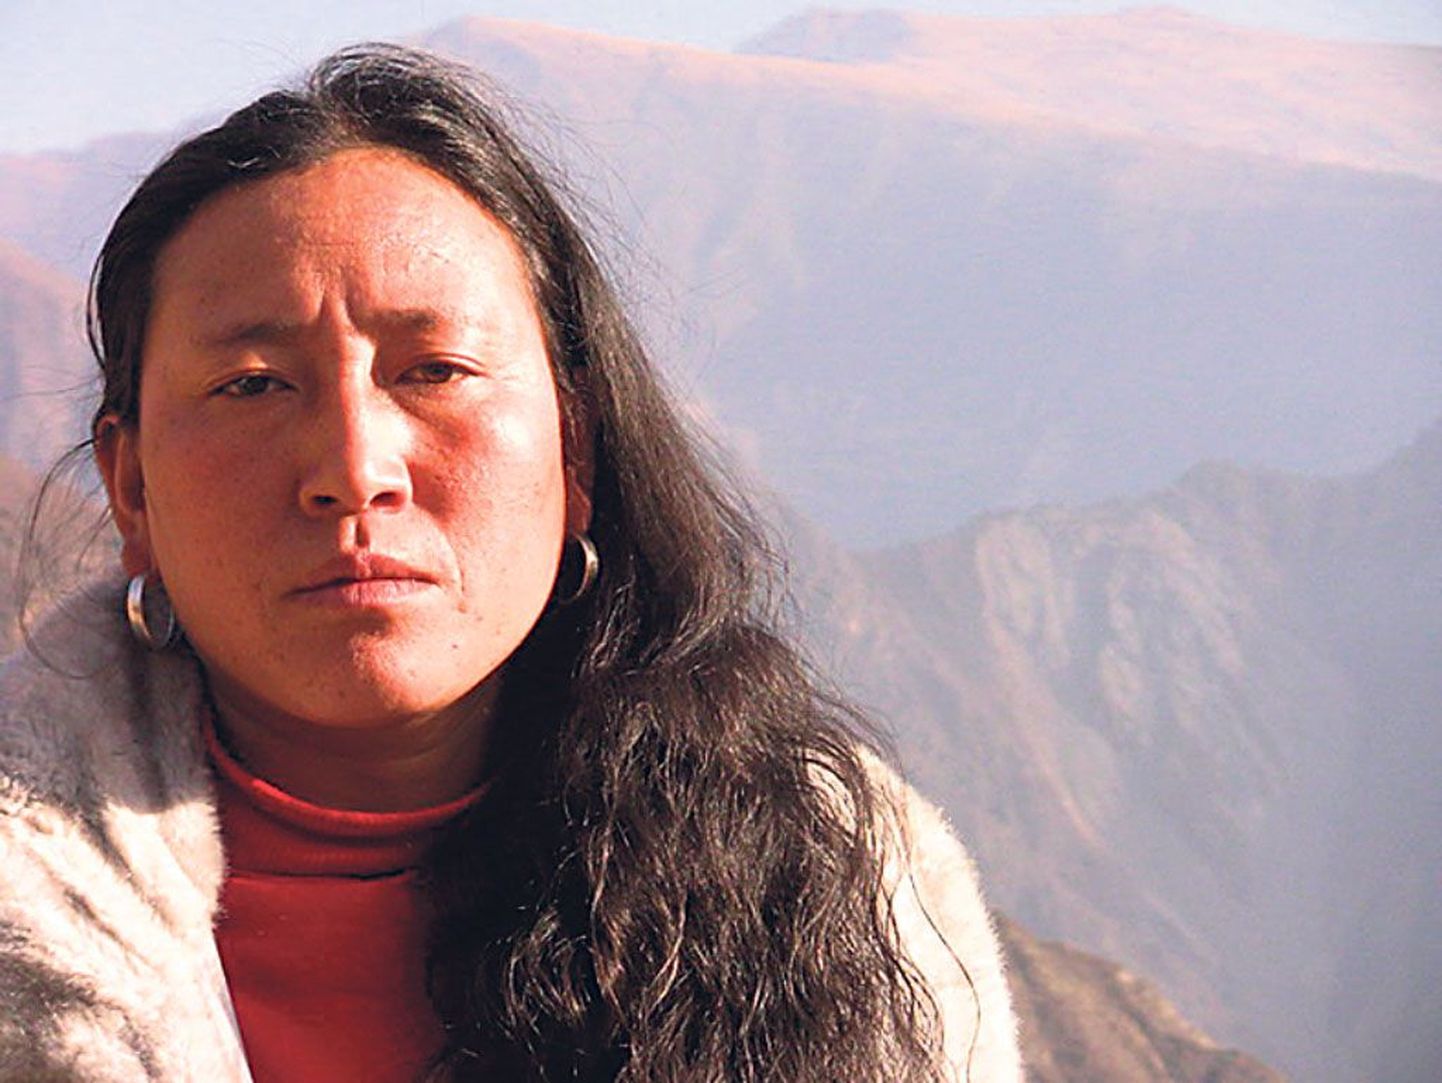 Tänu juhusele kohtas tiibetlanna Zanta ameerika raadioreporterit, mis muutis tema elu ning lõi sõpruse erinevast kultuuriruumist pärit naiste vahel.